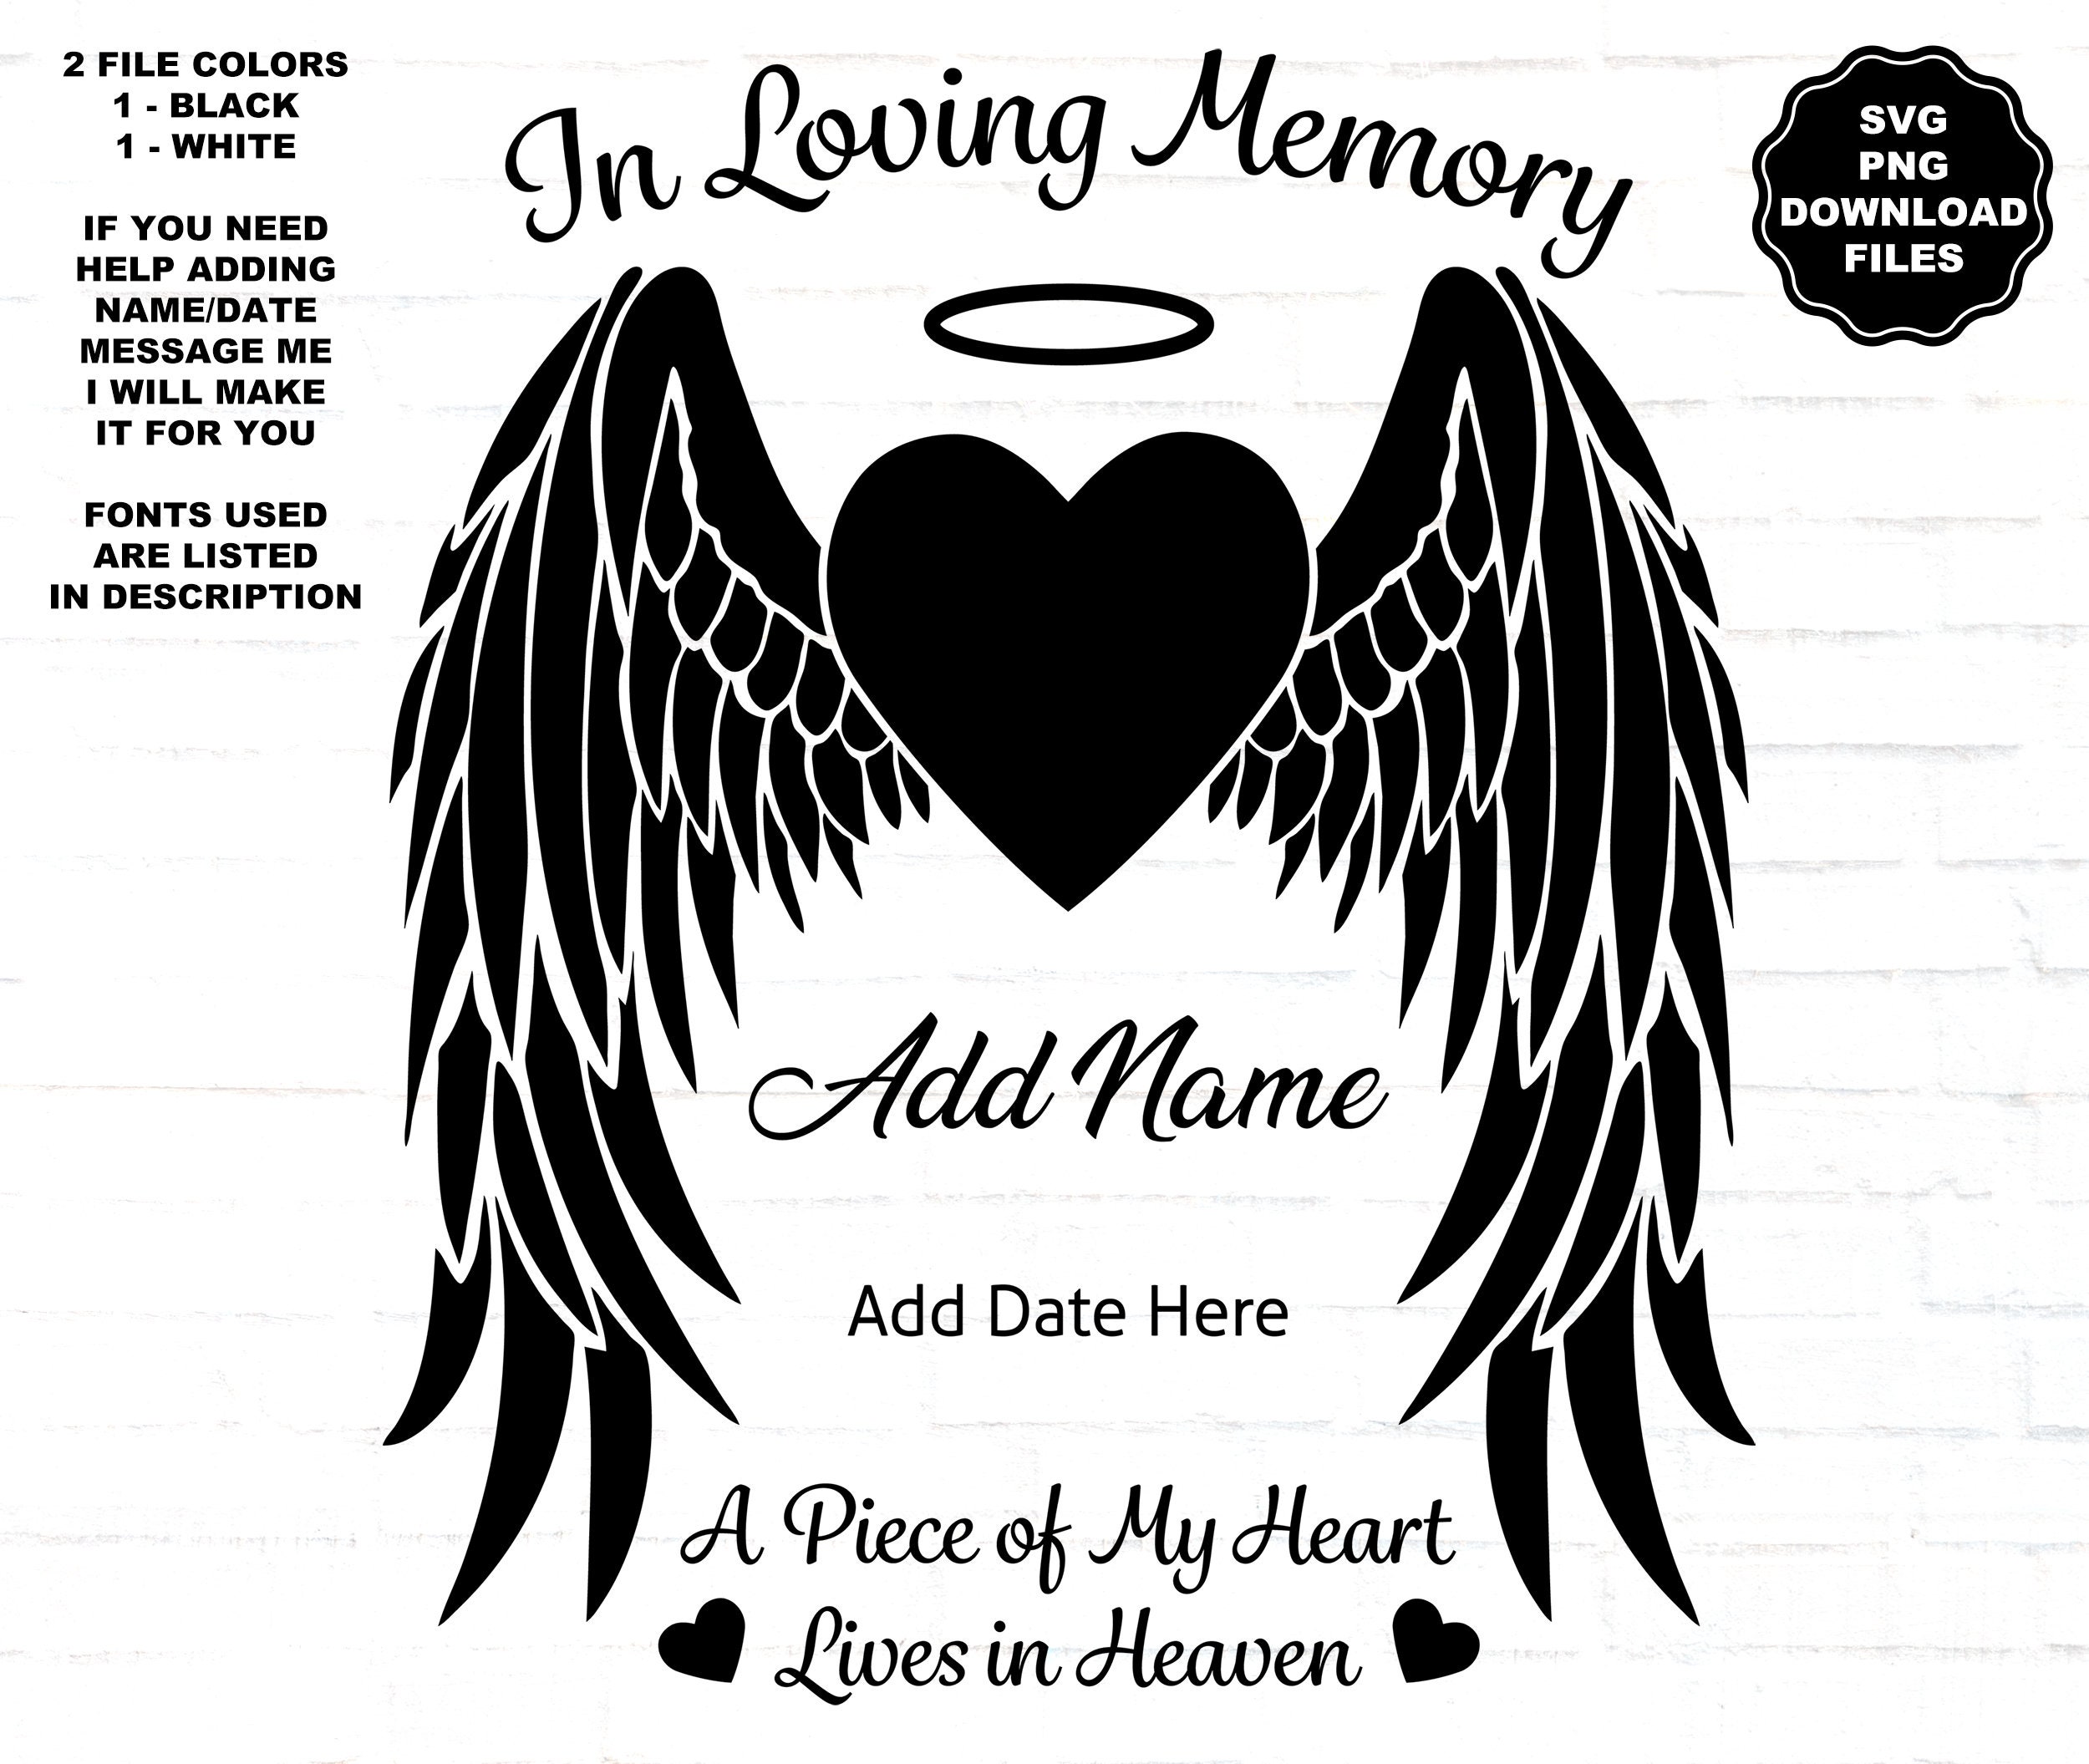 In Loving Memory Angel Wings SVG Angel Wings Heart Halo Heaven